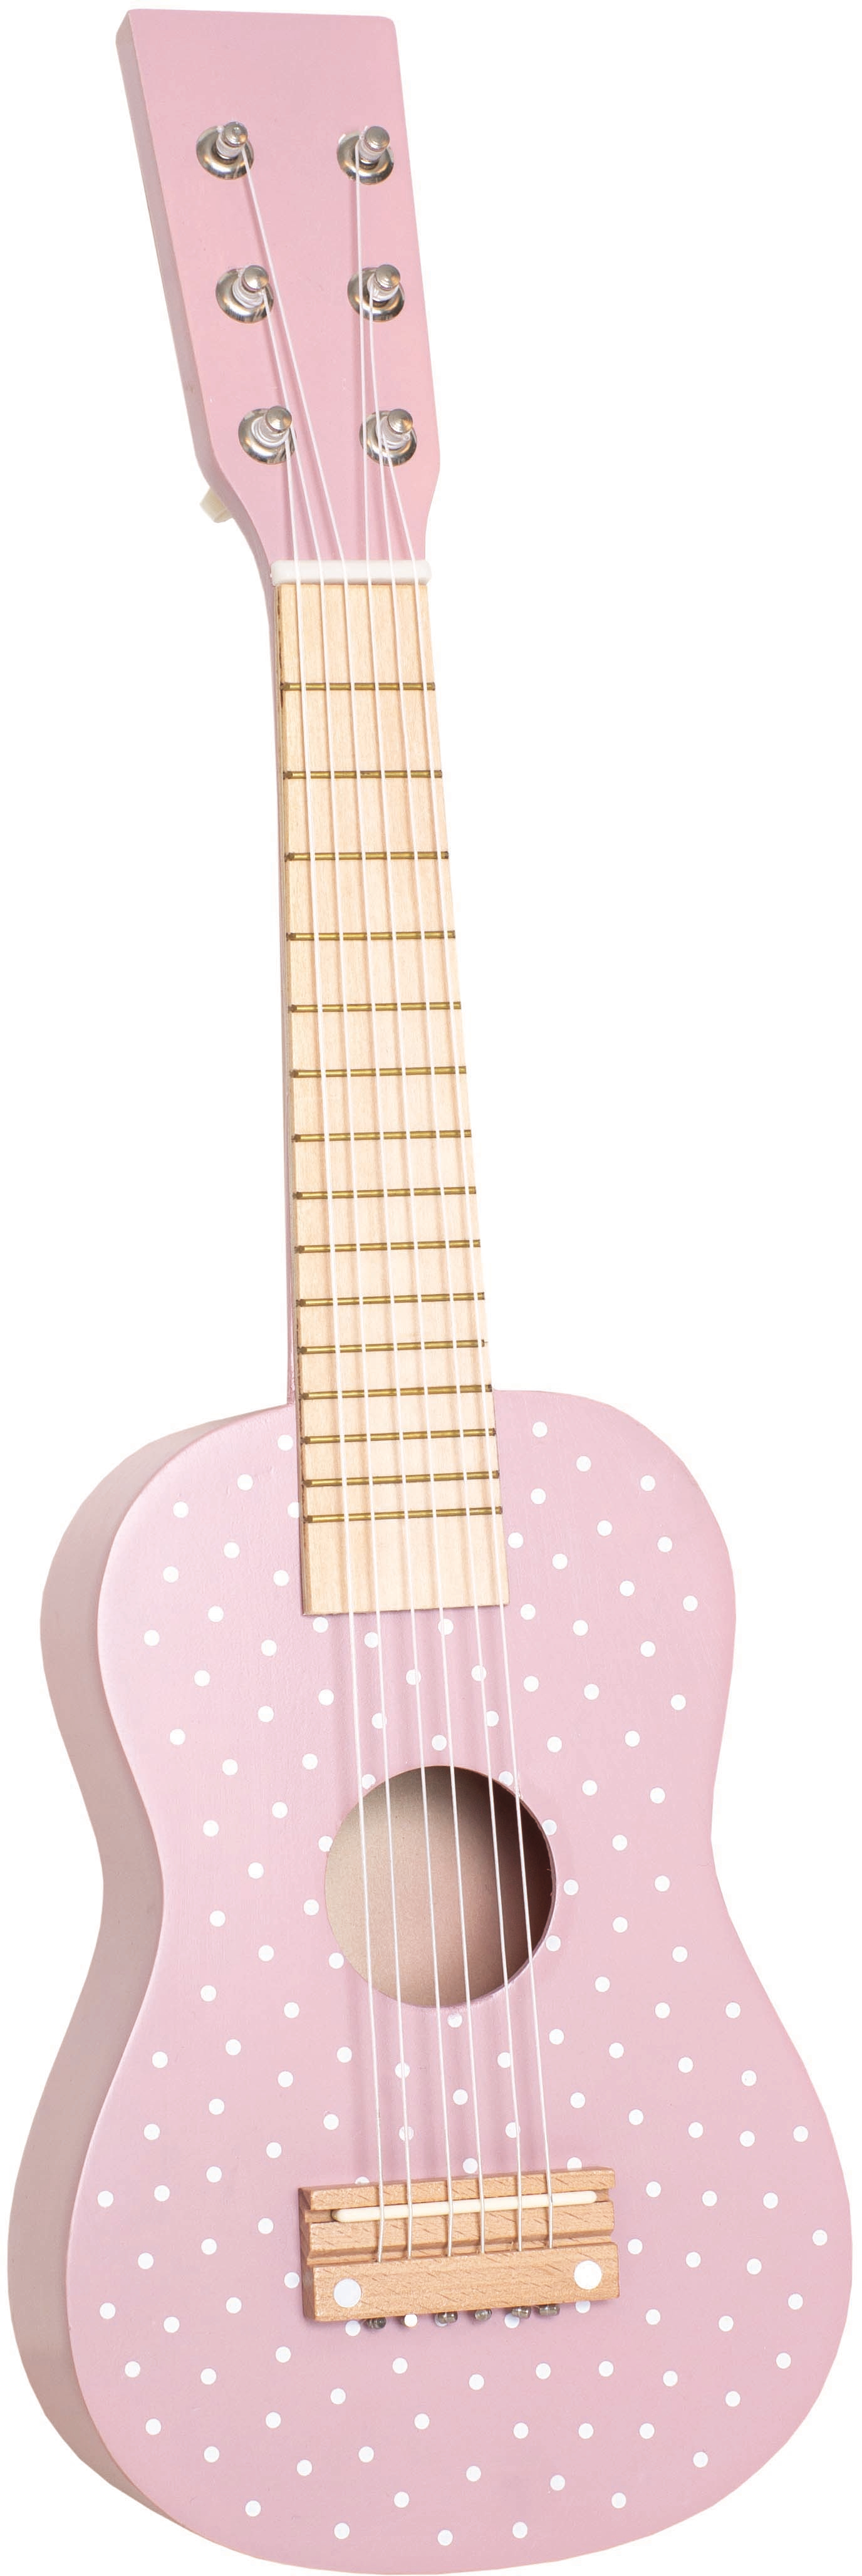 JABADABADO Guitar M14098 pink